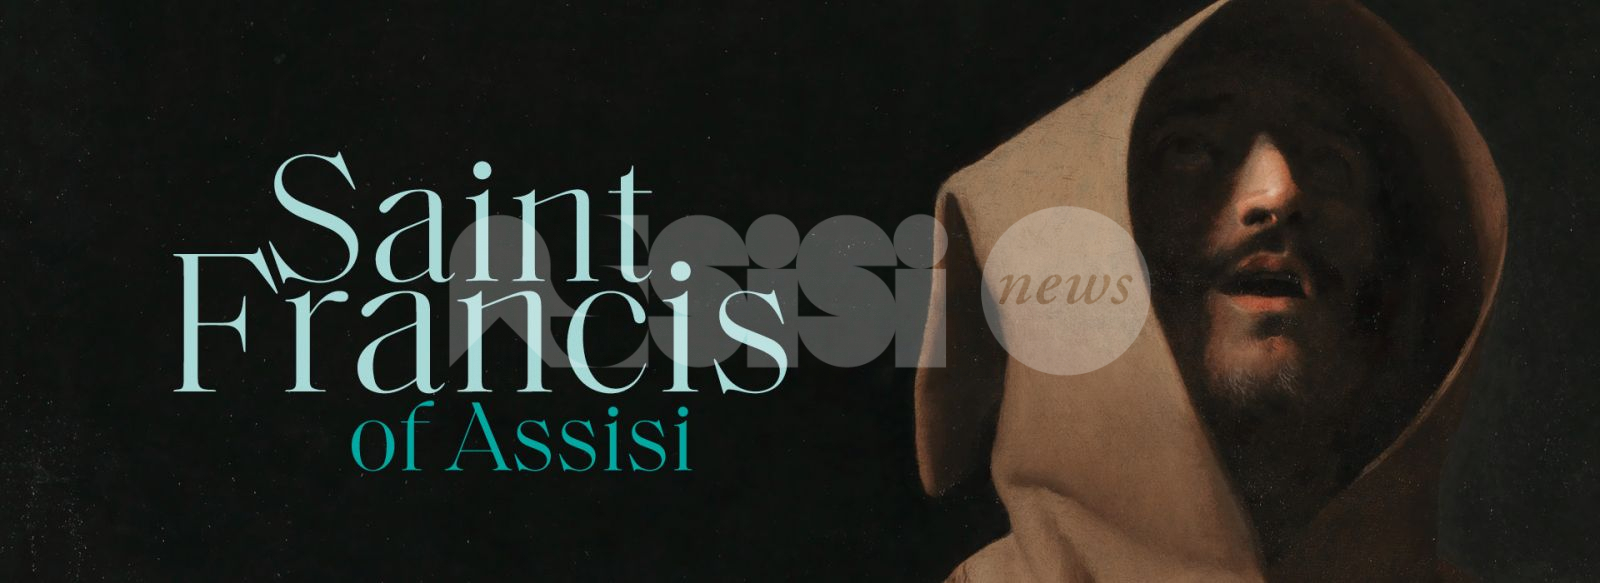 Saint Francis of Assisi, il Poverello protagonista di una mostra alla National Gallery di Londra